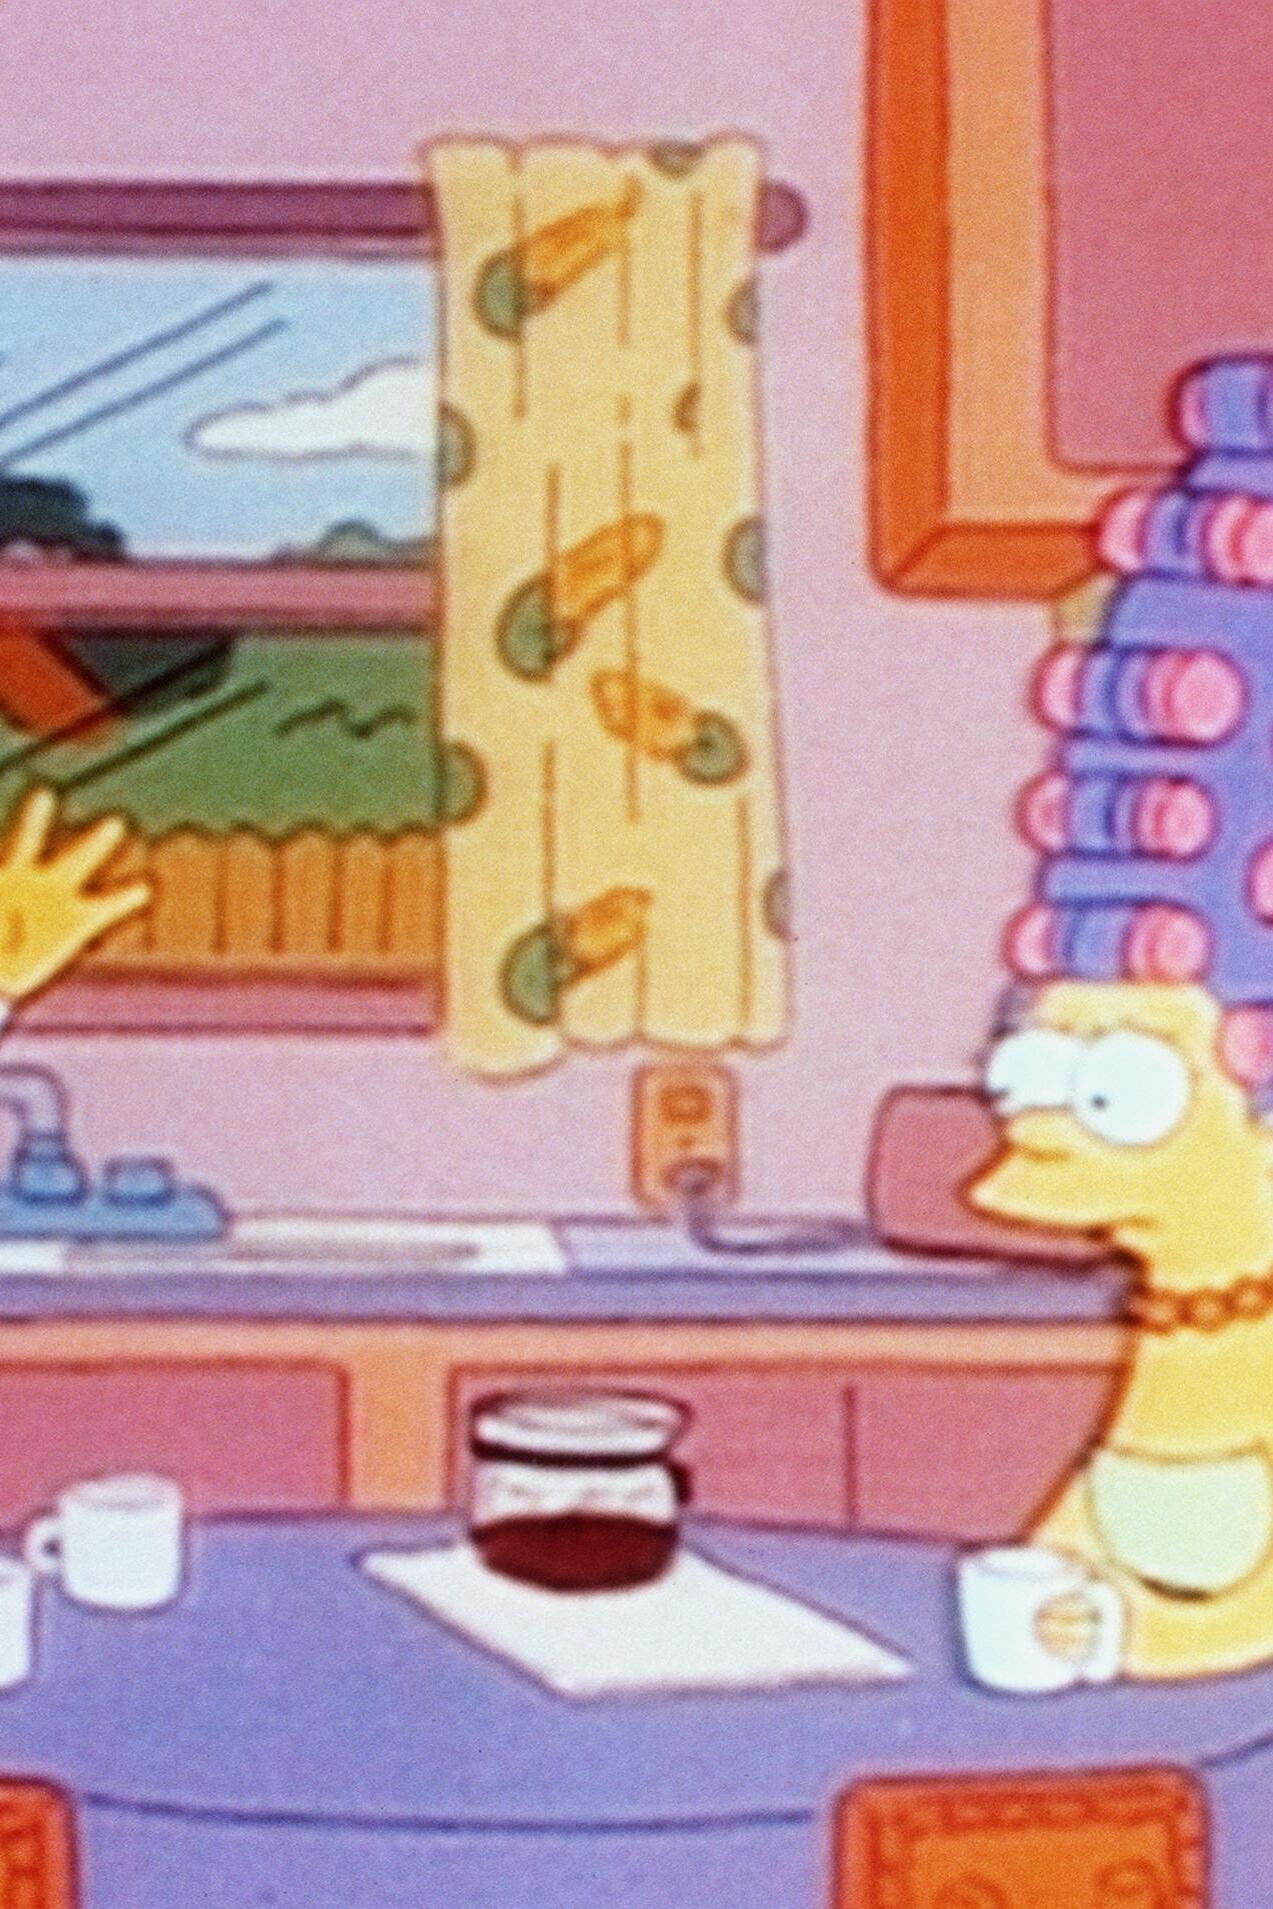 Les Simpson - Le pinceau qui tue